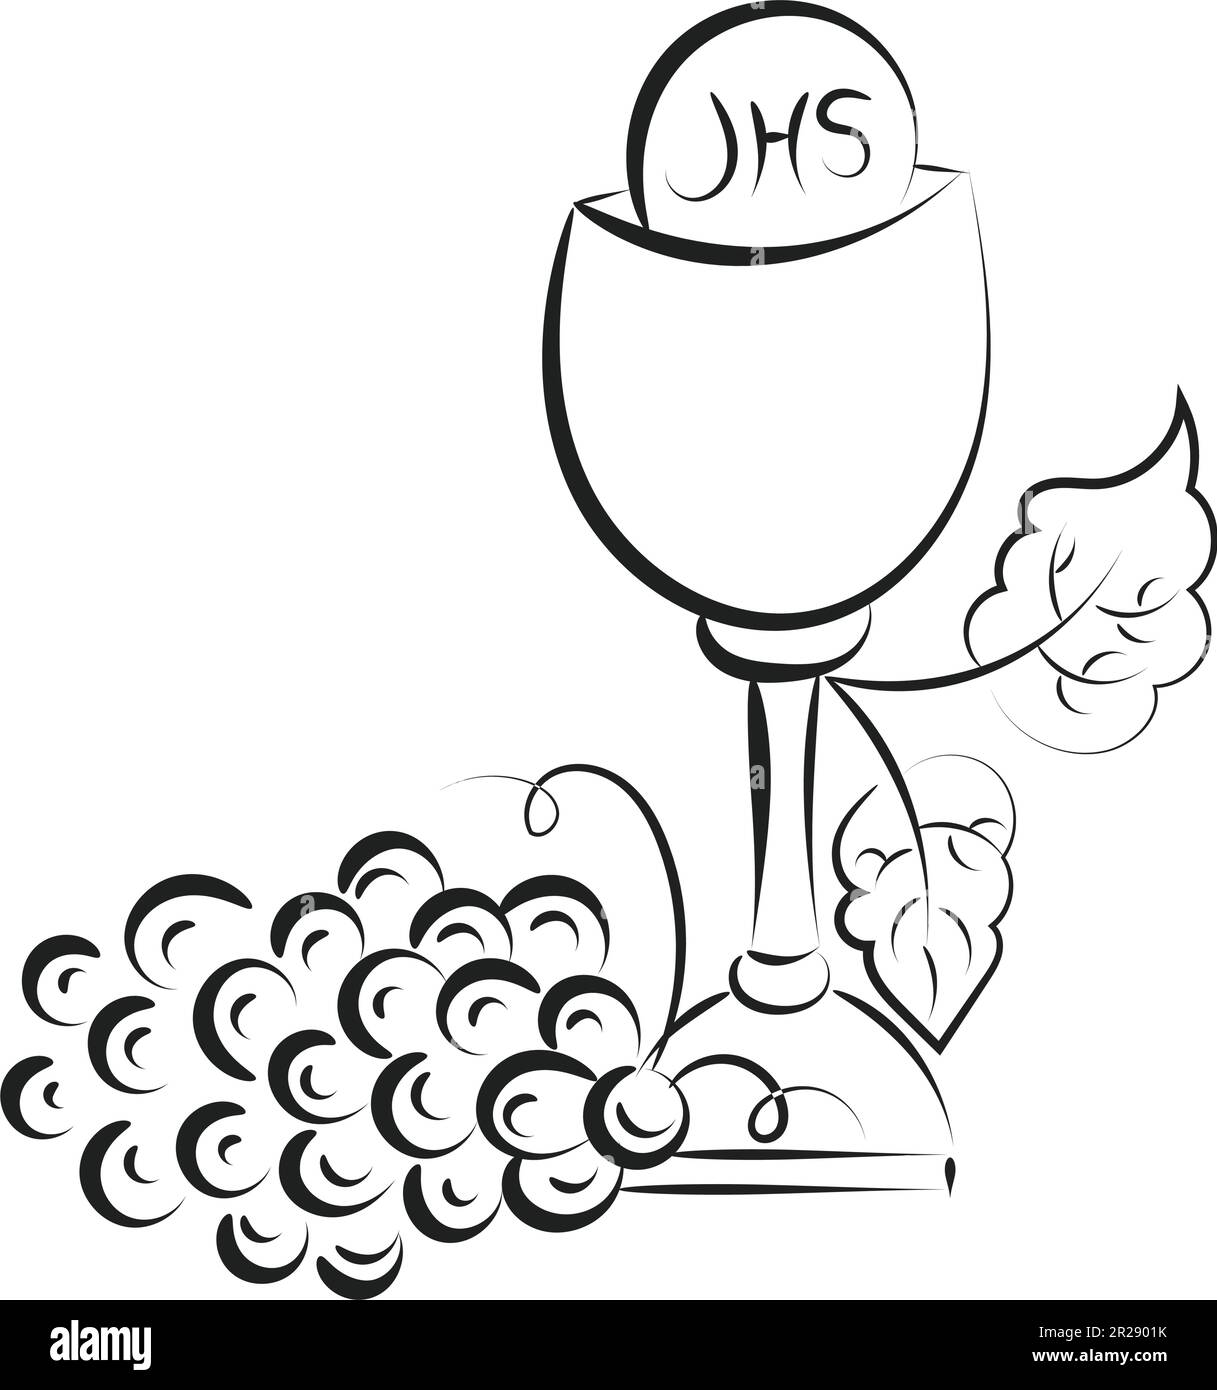 Jésus et l'illustration de l'Eucharistie. Eucharistie en Chalice avec raisins et blé pour impression ou utilisation comme affiche, carte, prospectus ou T-shirt Illustration de Vecteur